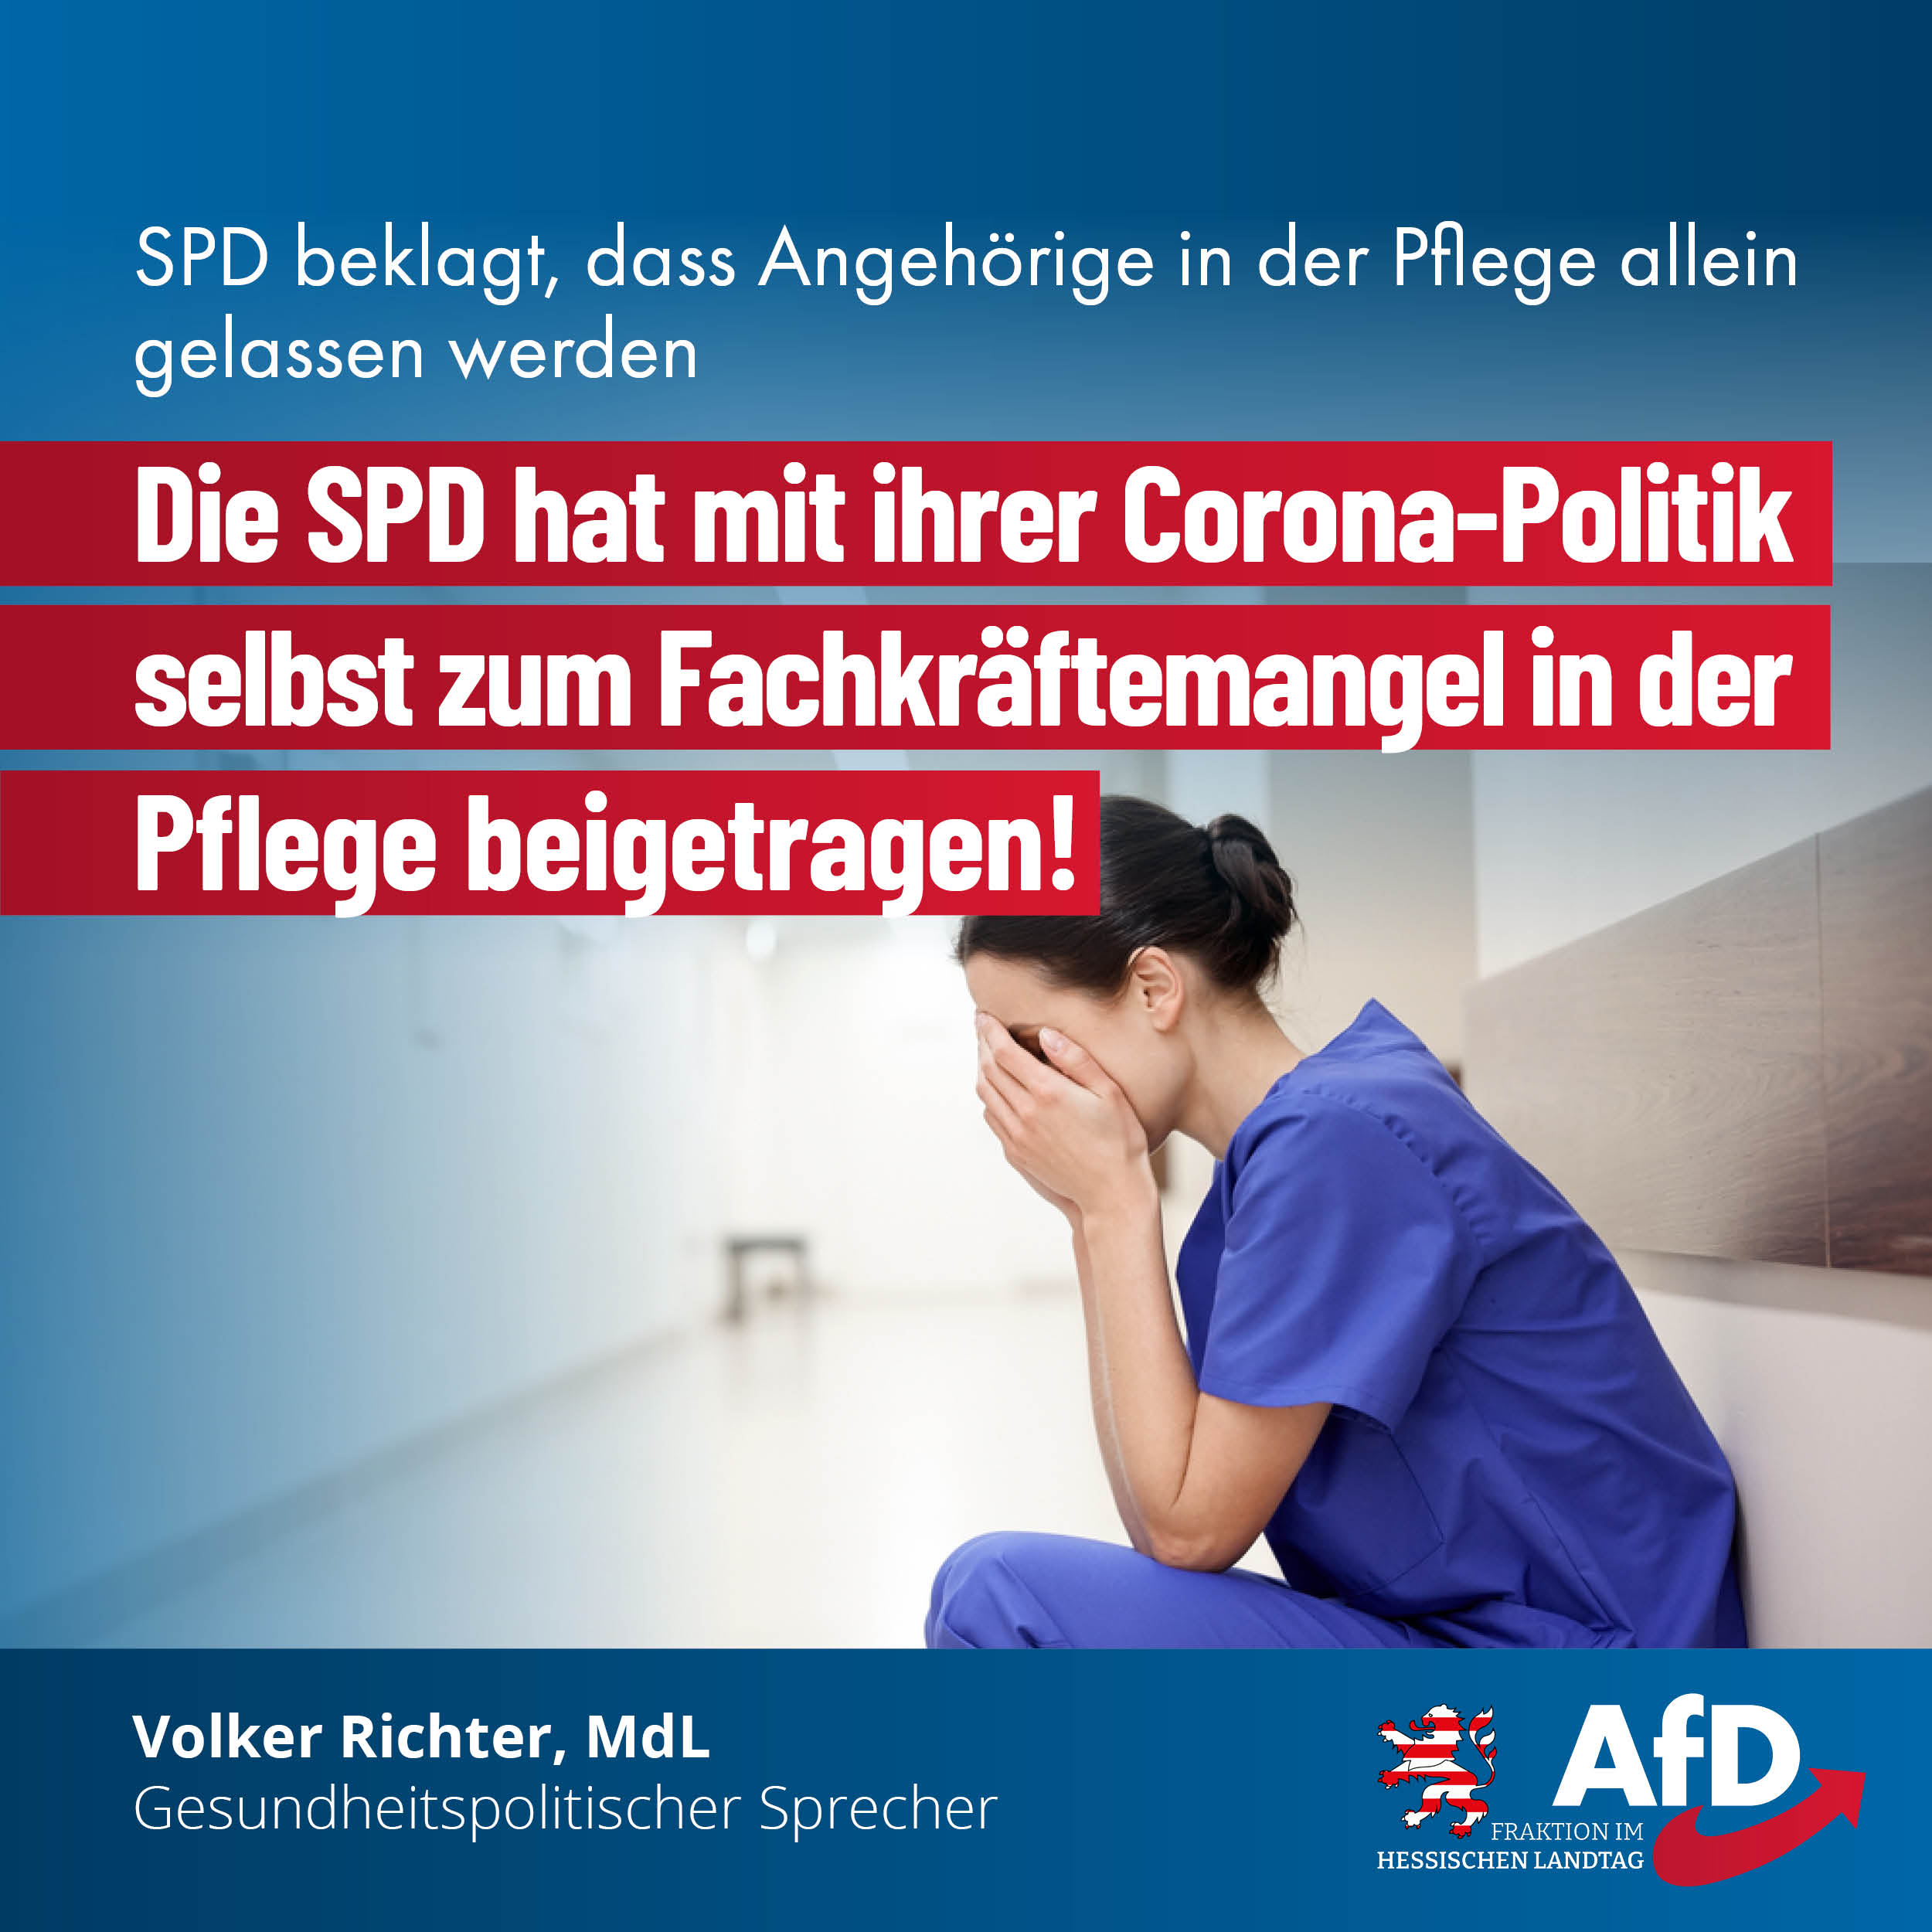 You are currently viewing Die SPD hat mit ihrer Corona-Politik selbst zum Fachkräftemangel in der Pflege beigetragen